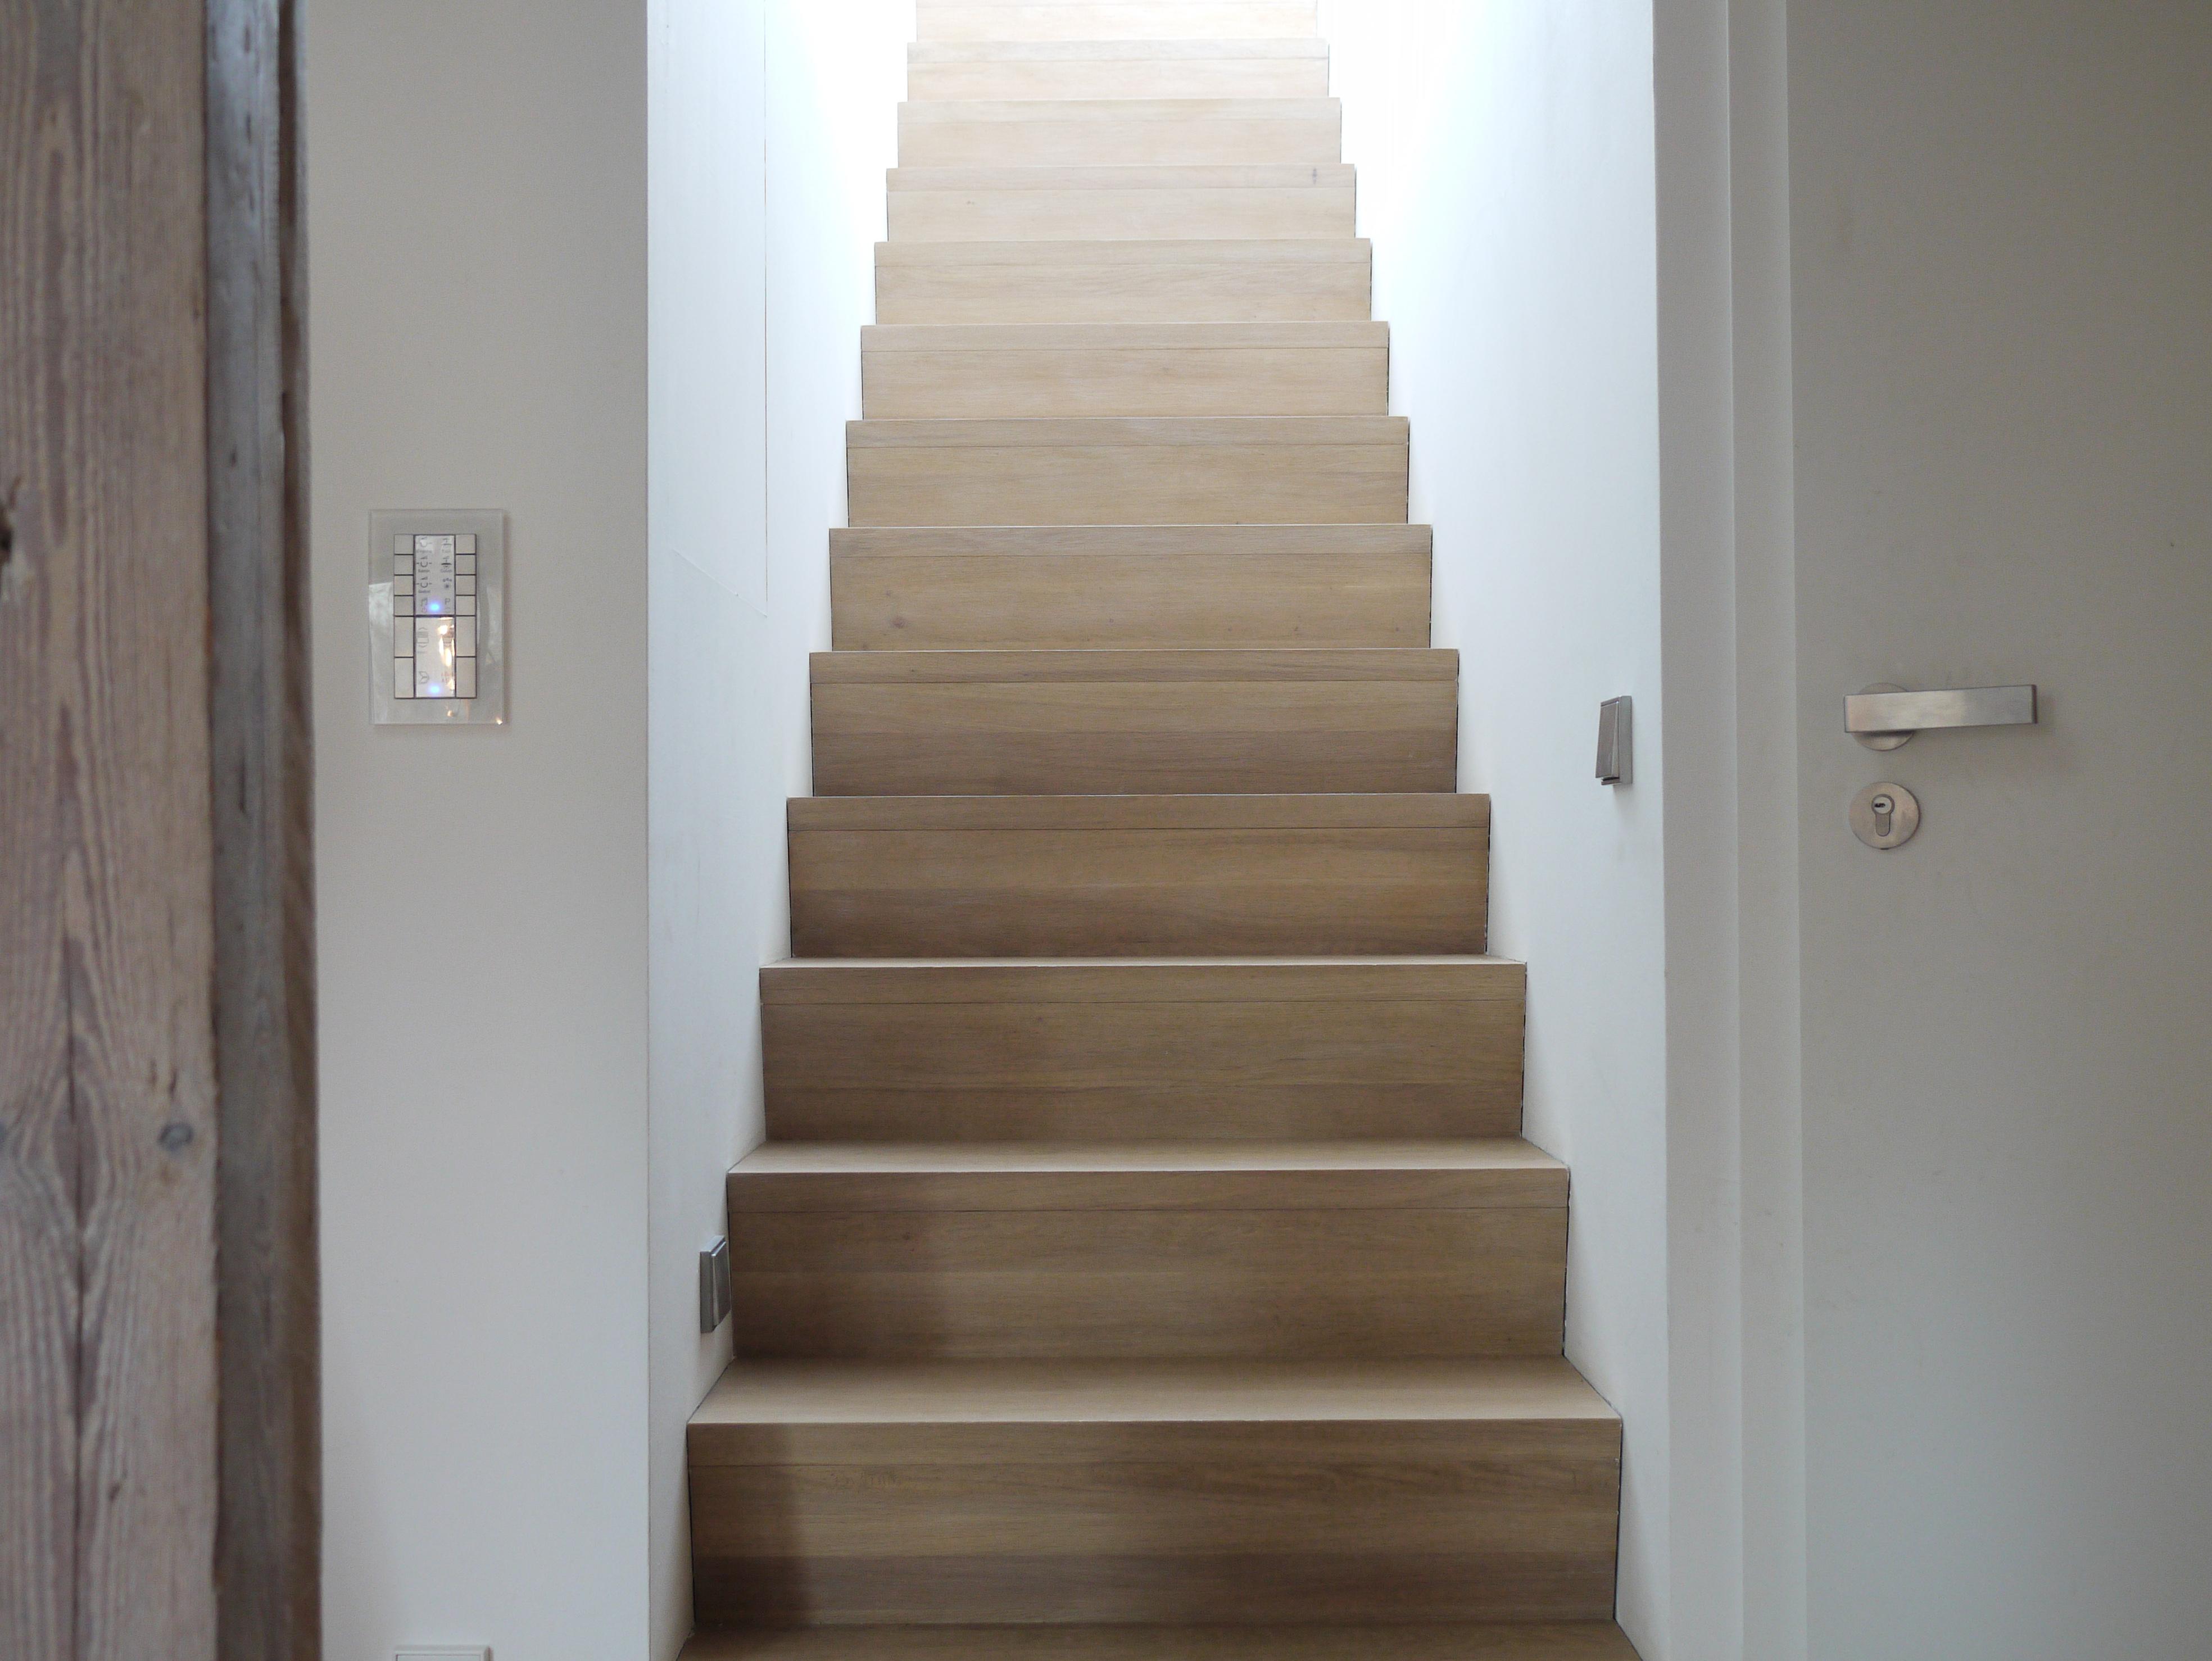 Minimalistische Treppe zur Dachterasse #treppenhaus ©HolzDesignPur